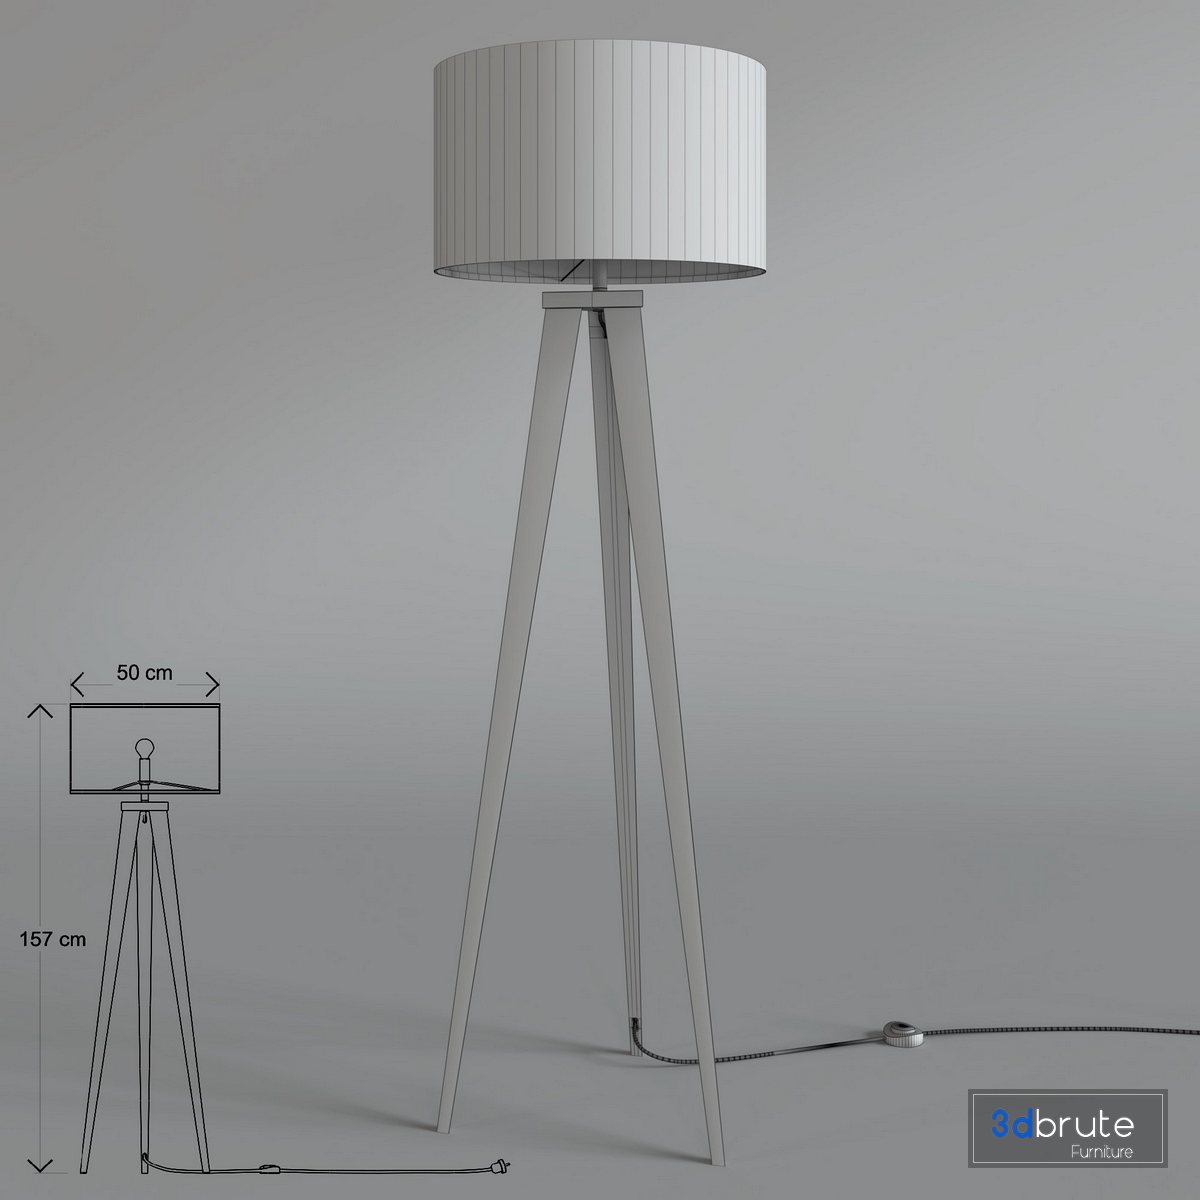 In detail Formuleren Regenachtig Zuiver floor lamp tripod 3d model Buy Download 3dbrute